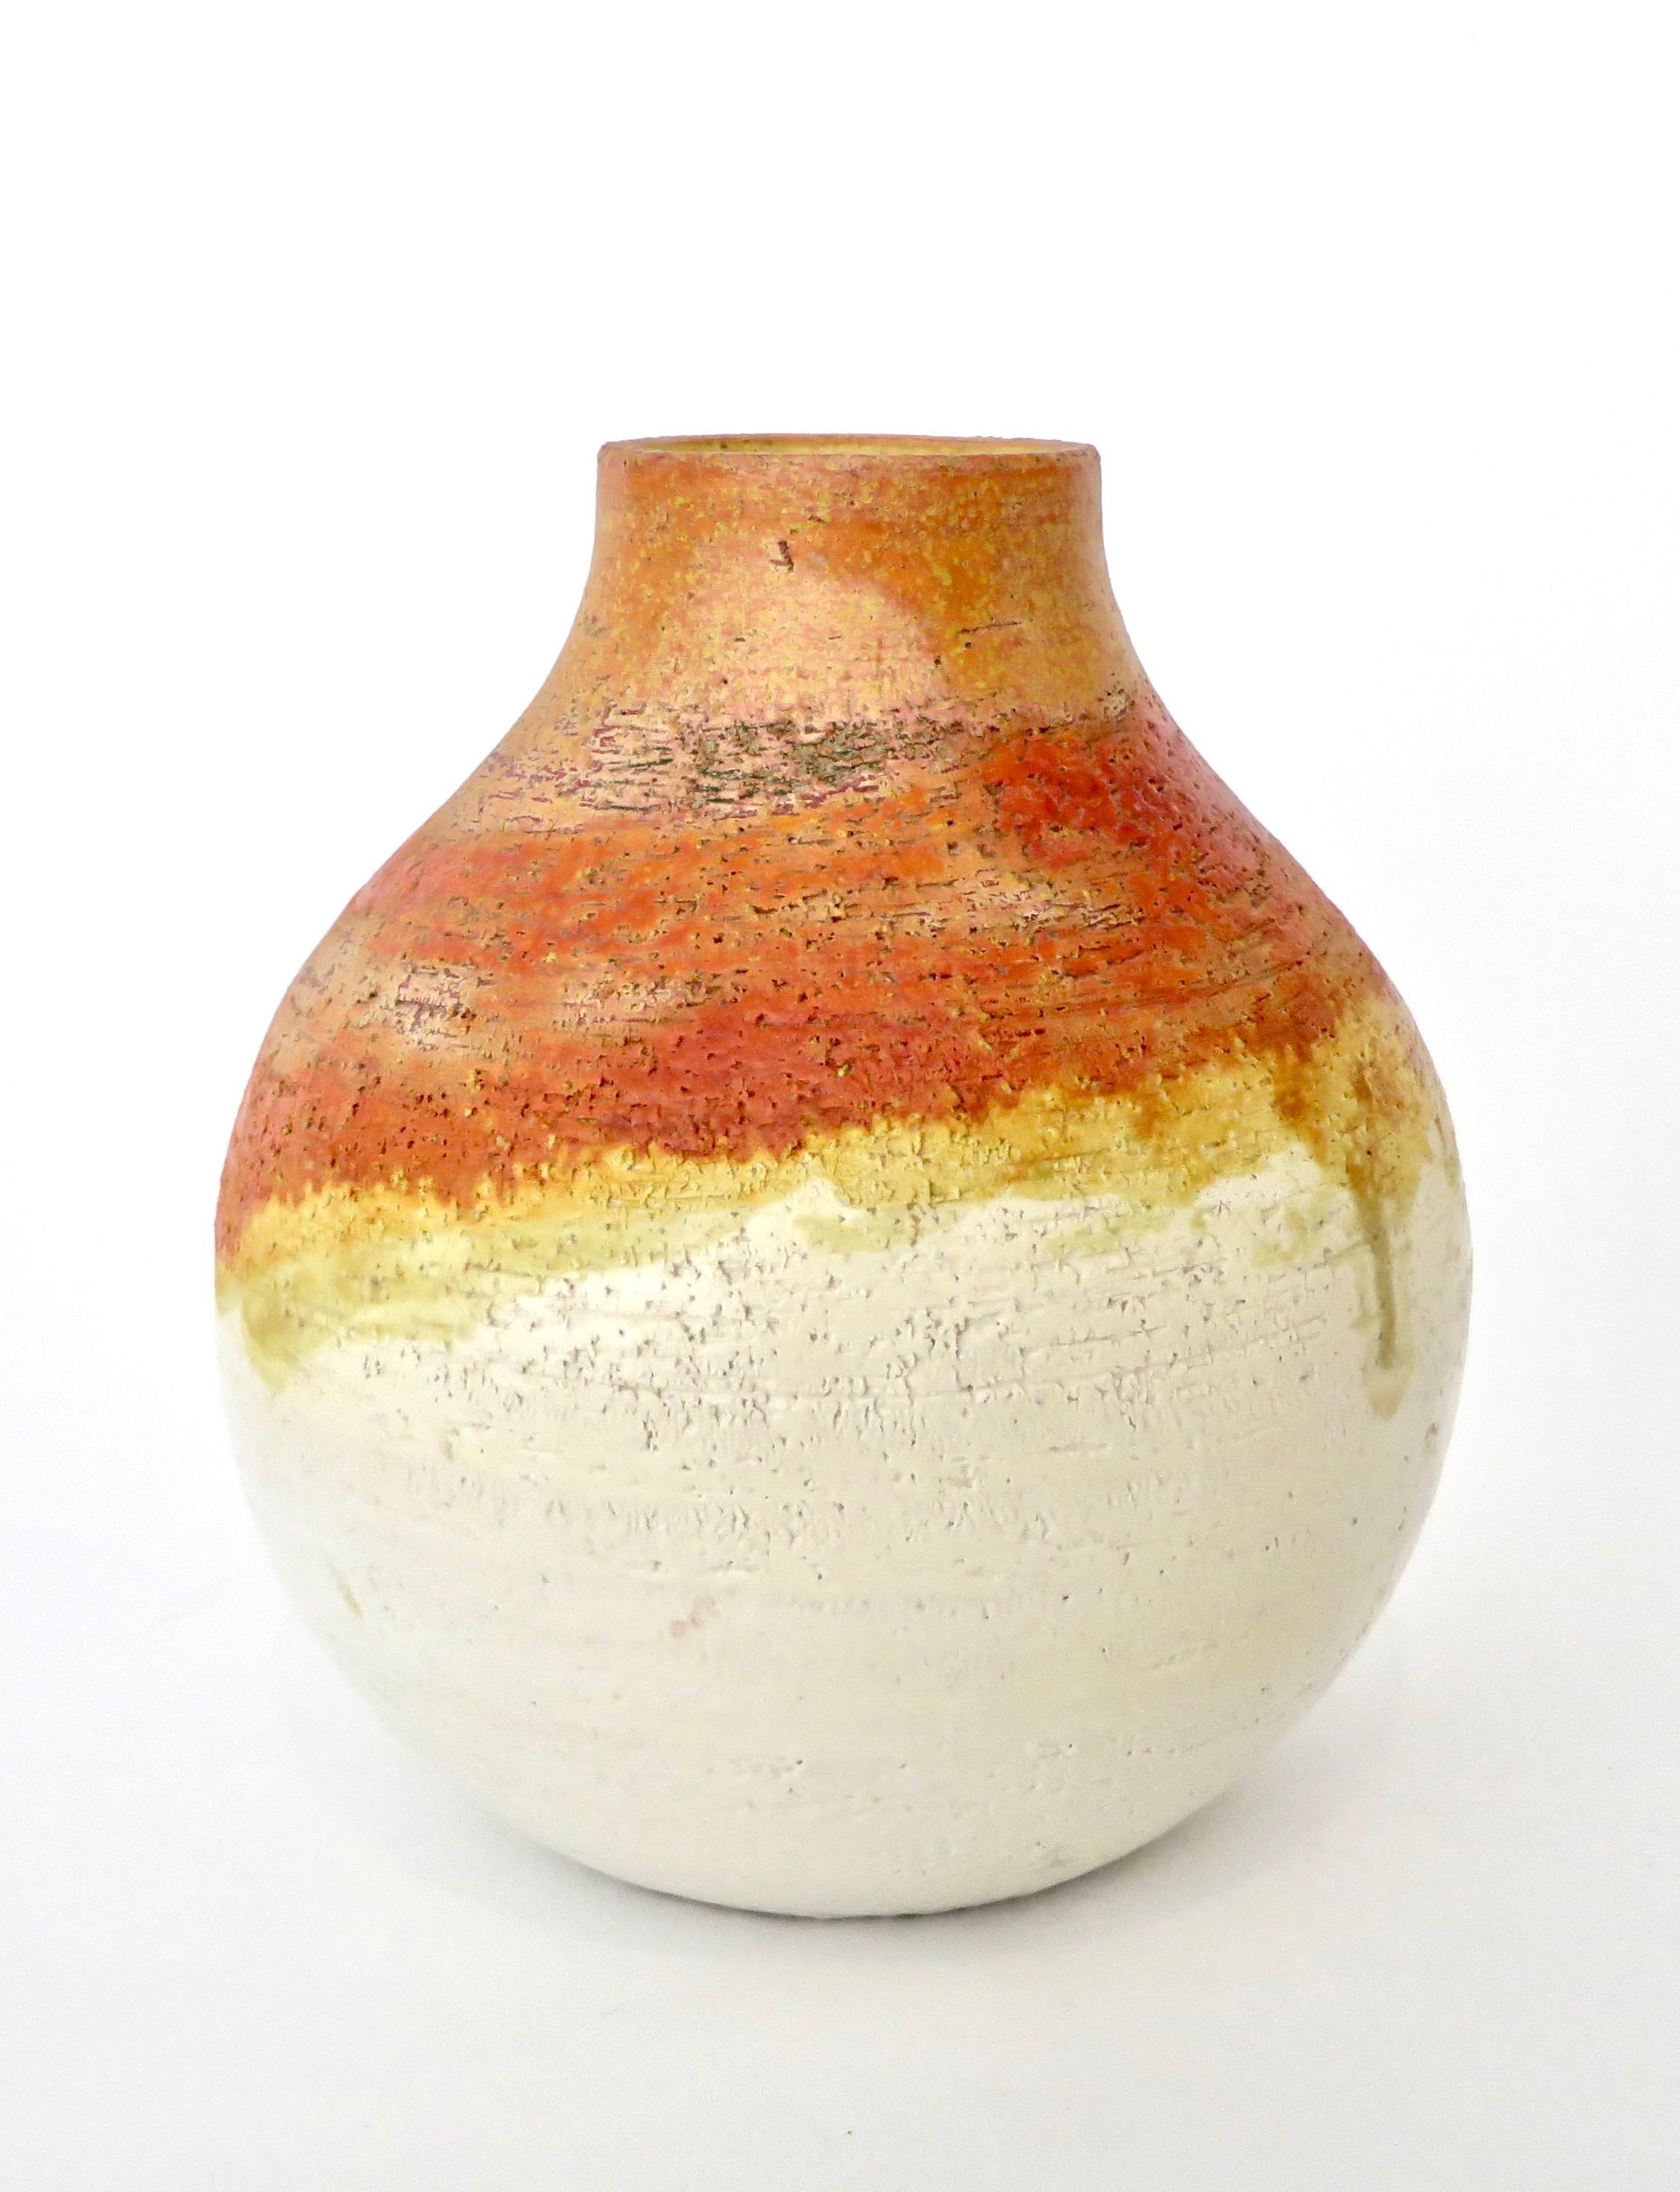 Vase mit Keramikgefäß von Marcello Fantoni. Signiert am Boden Fantoni, Italien.
Eine großzügige runde Form mit einer schönen orangefarbenen Glasur, die am Hals in gelb und am Boden in weiß abfällt.
Bitte sehen Sie sich die gesamte Kollektion auf